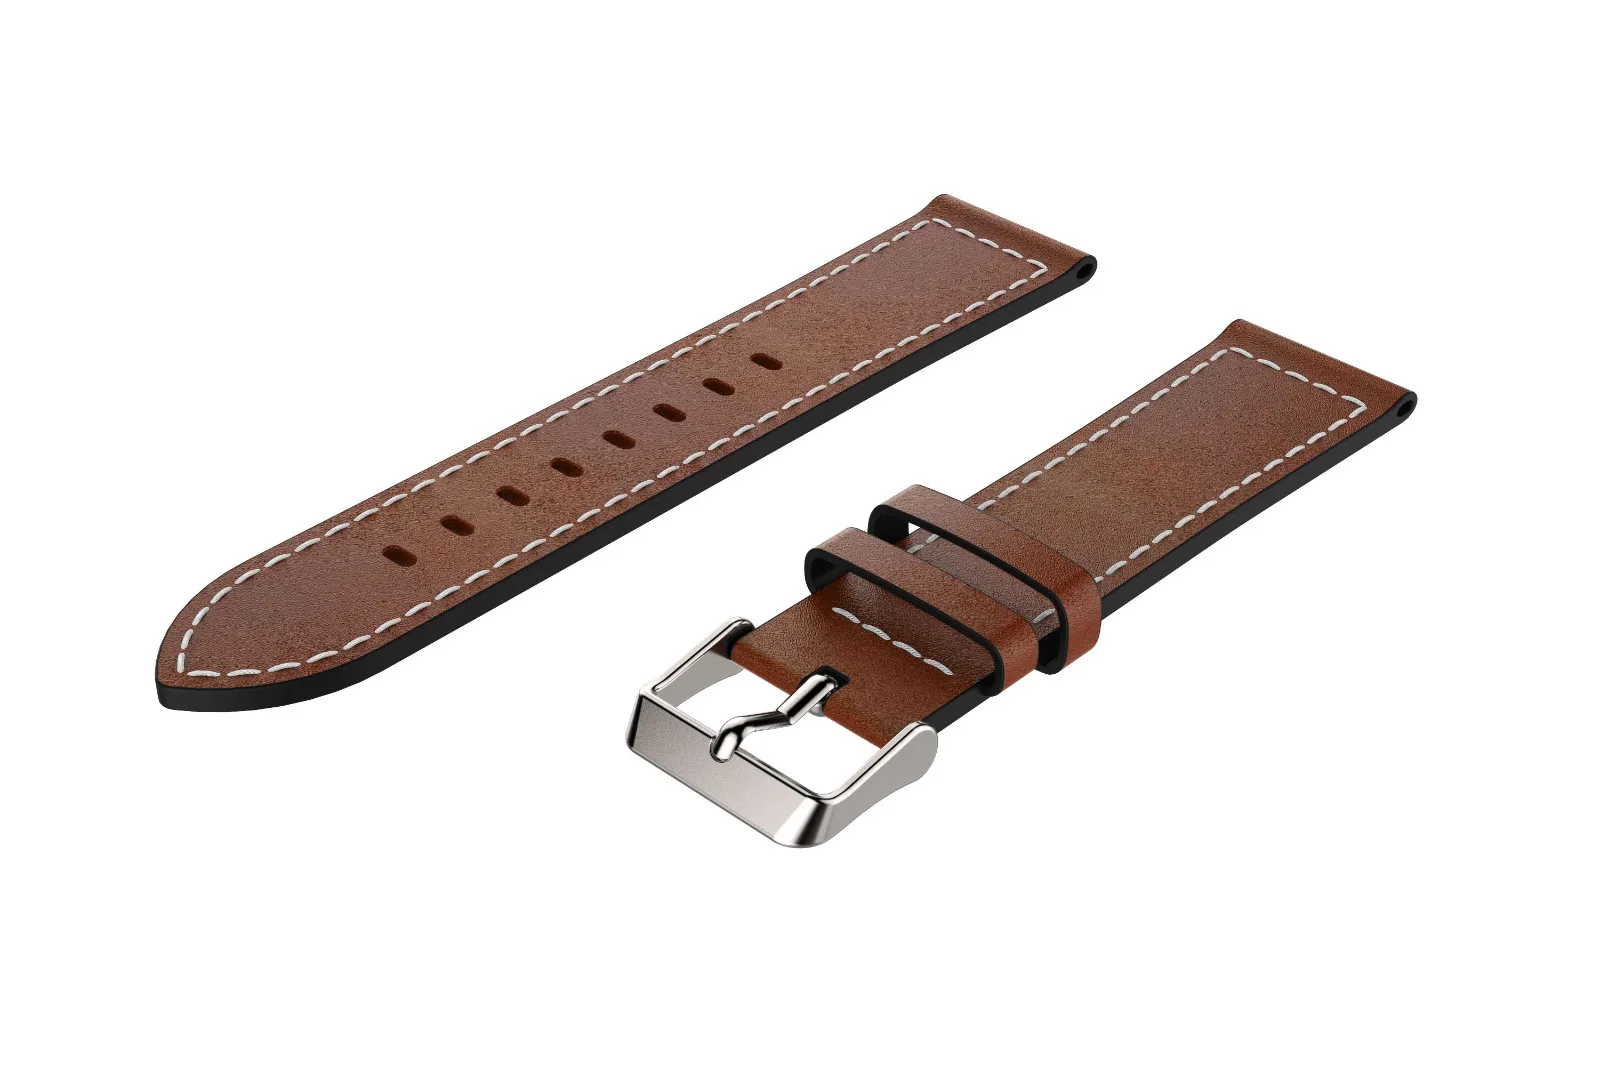 Новая Горячая замена классический кожаный ремешок для samsung Galaxy Watch 46 мм носимые Устройства фитнес-браслет